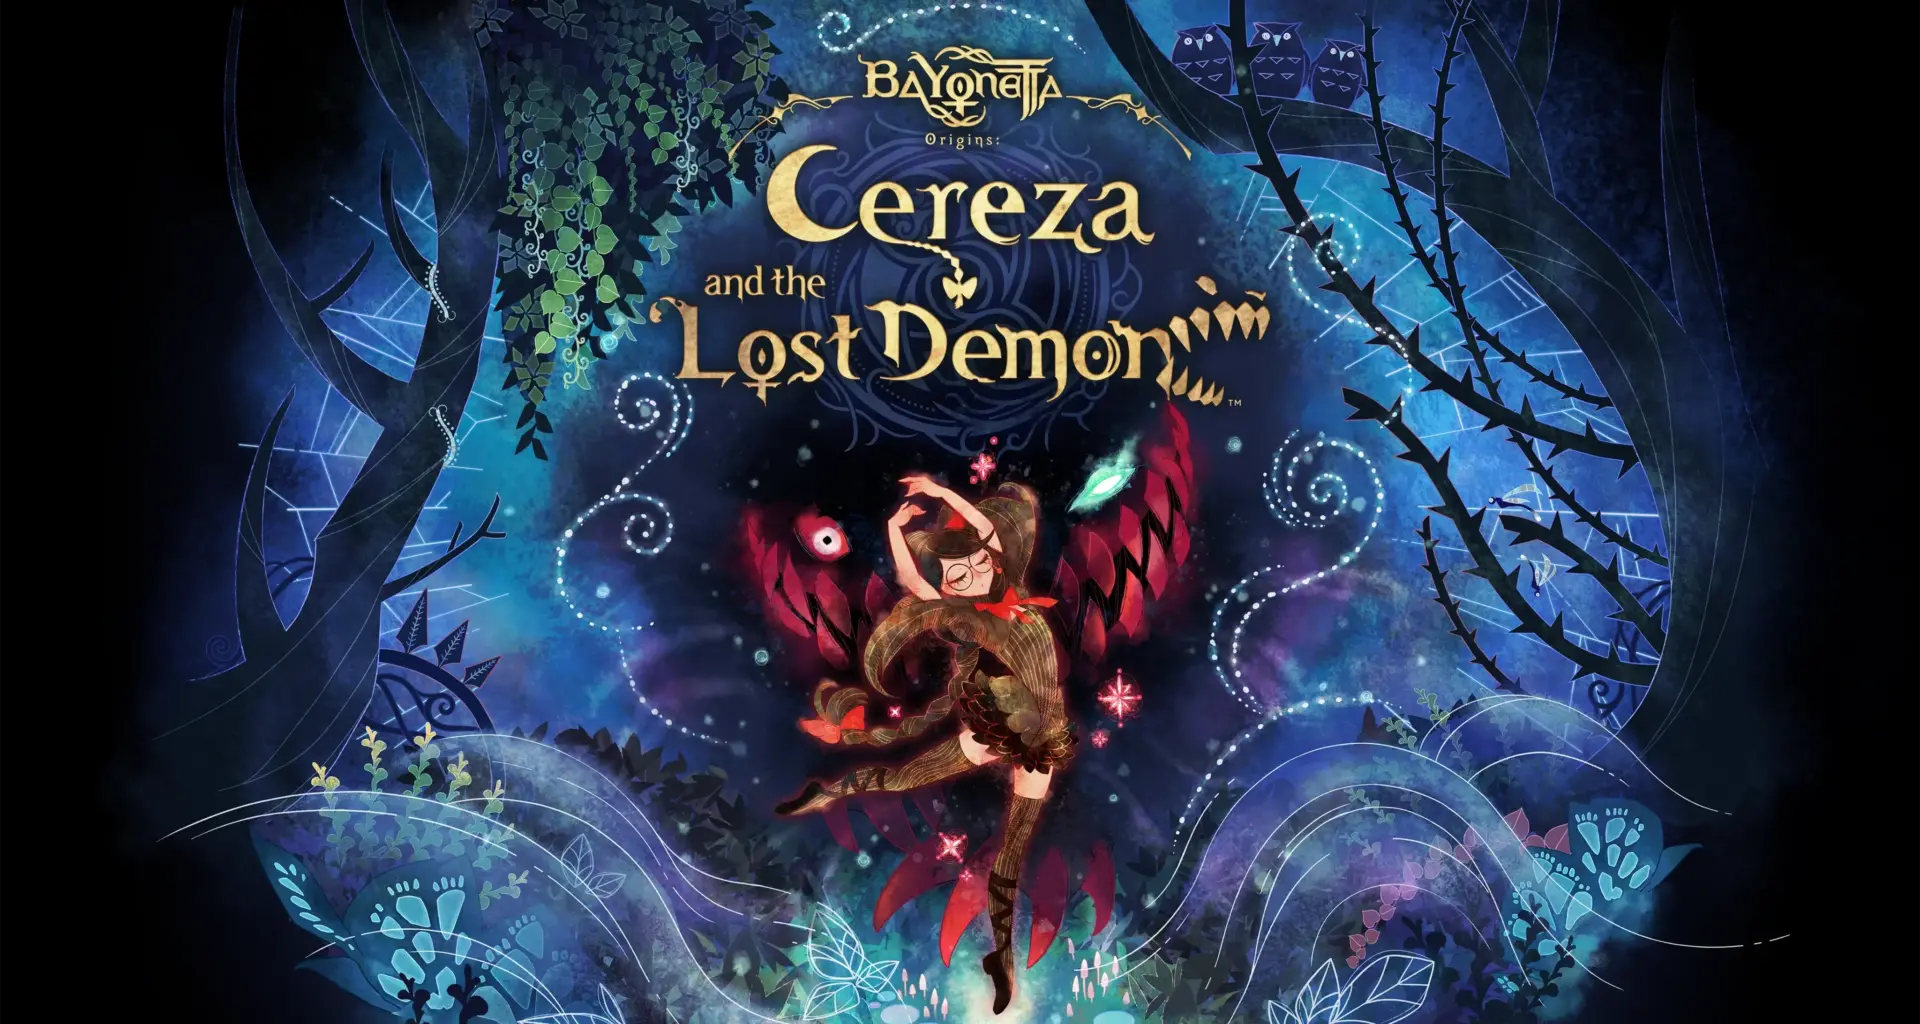 Review: bayonetta origins: cereza and the lost demon